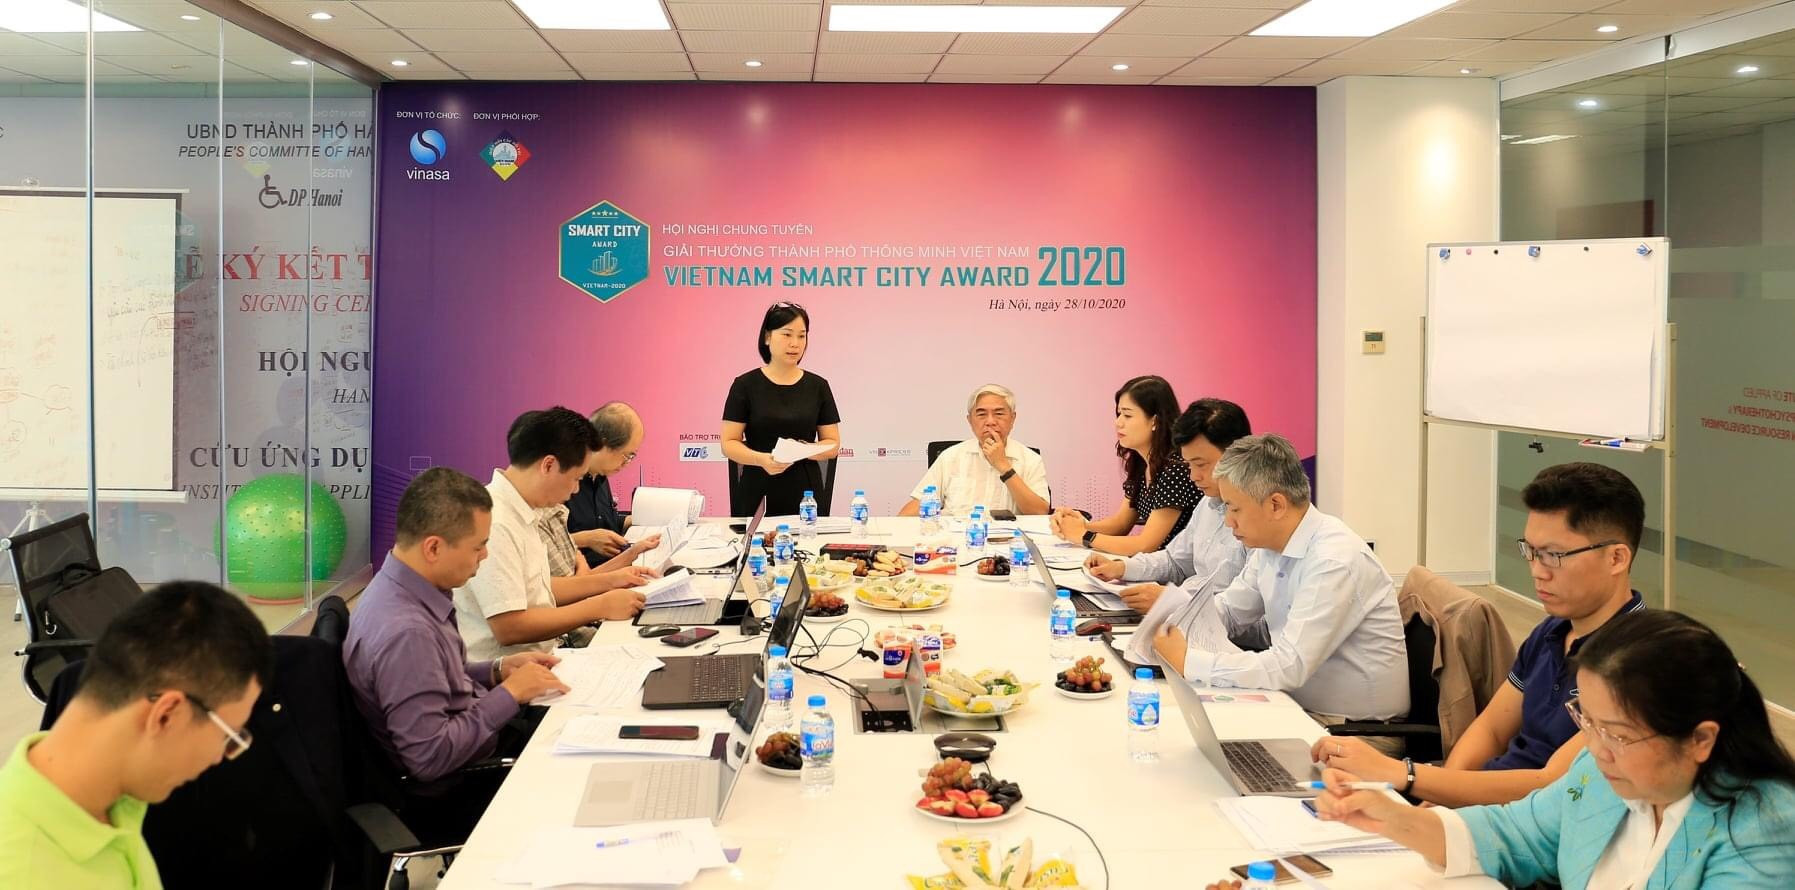 Giải thưởng thành phố thông minh Việt Nam 2020 sẽ trao 53 giải thưởng - Ảnh 2.